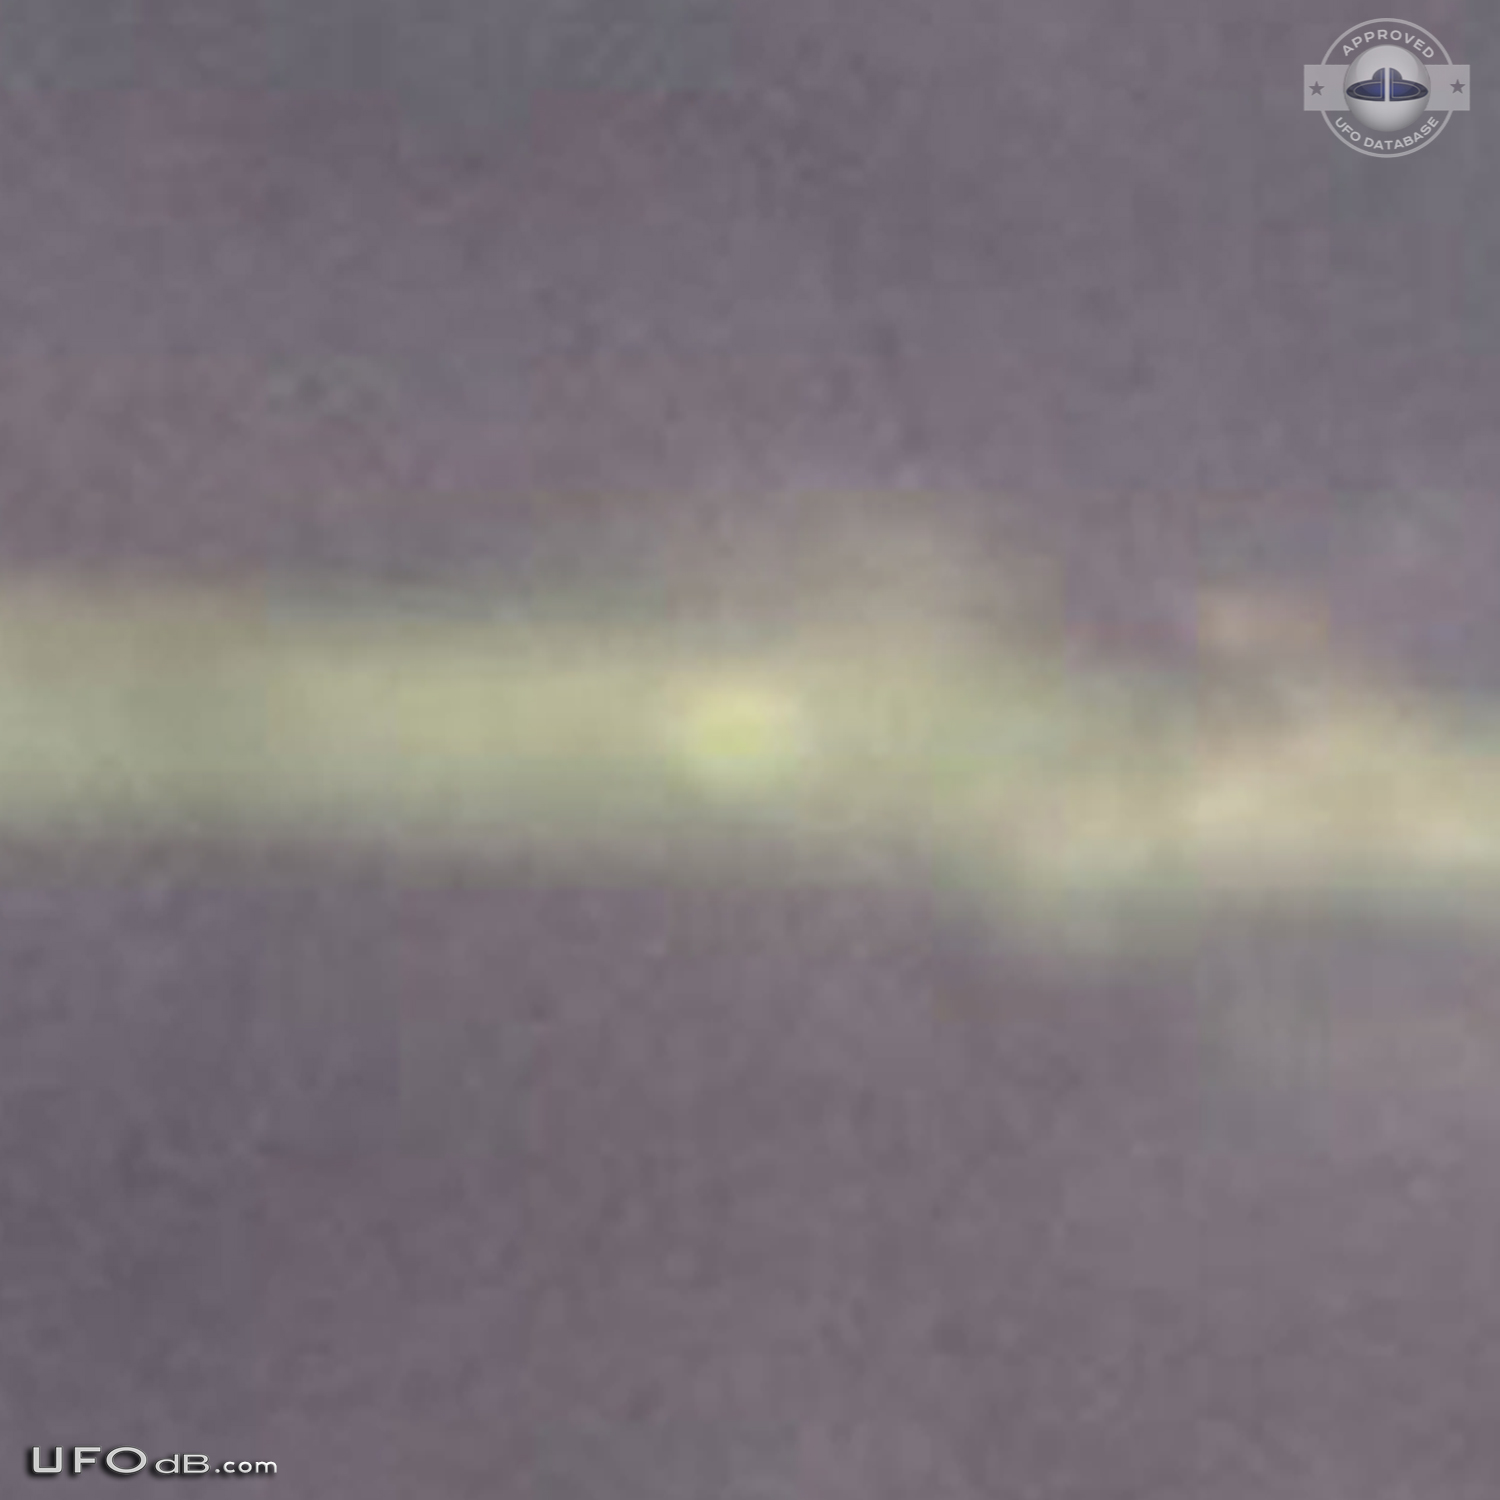 Strange UFO in the sky near Guantanamo prison, Cuba in 2015 UFO Picture #618-5